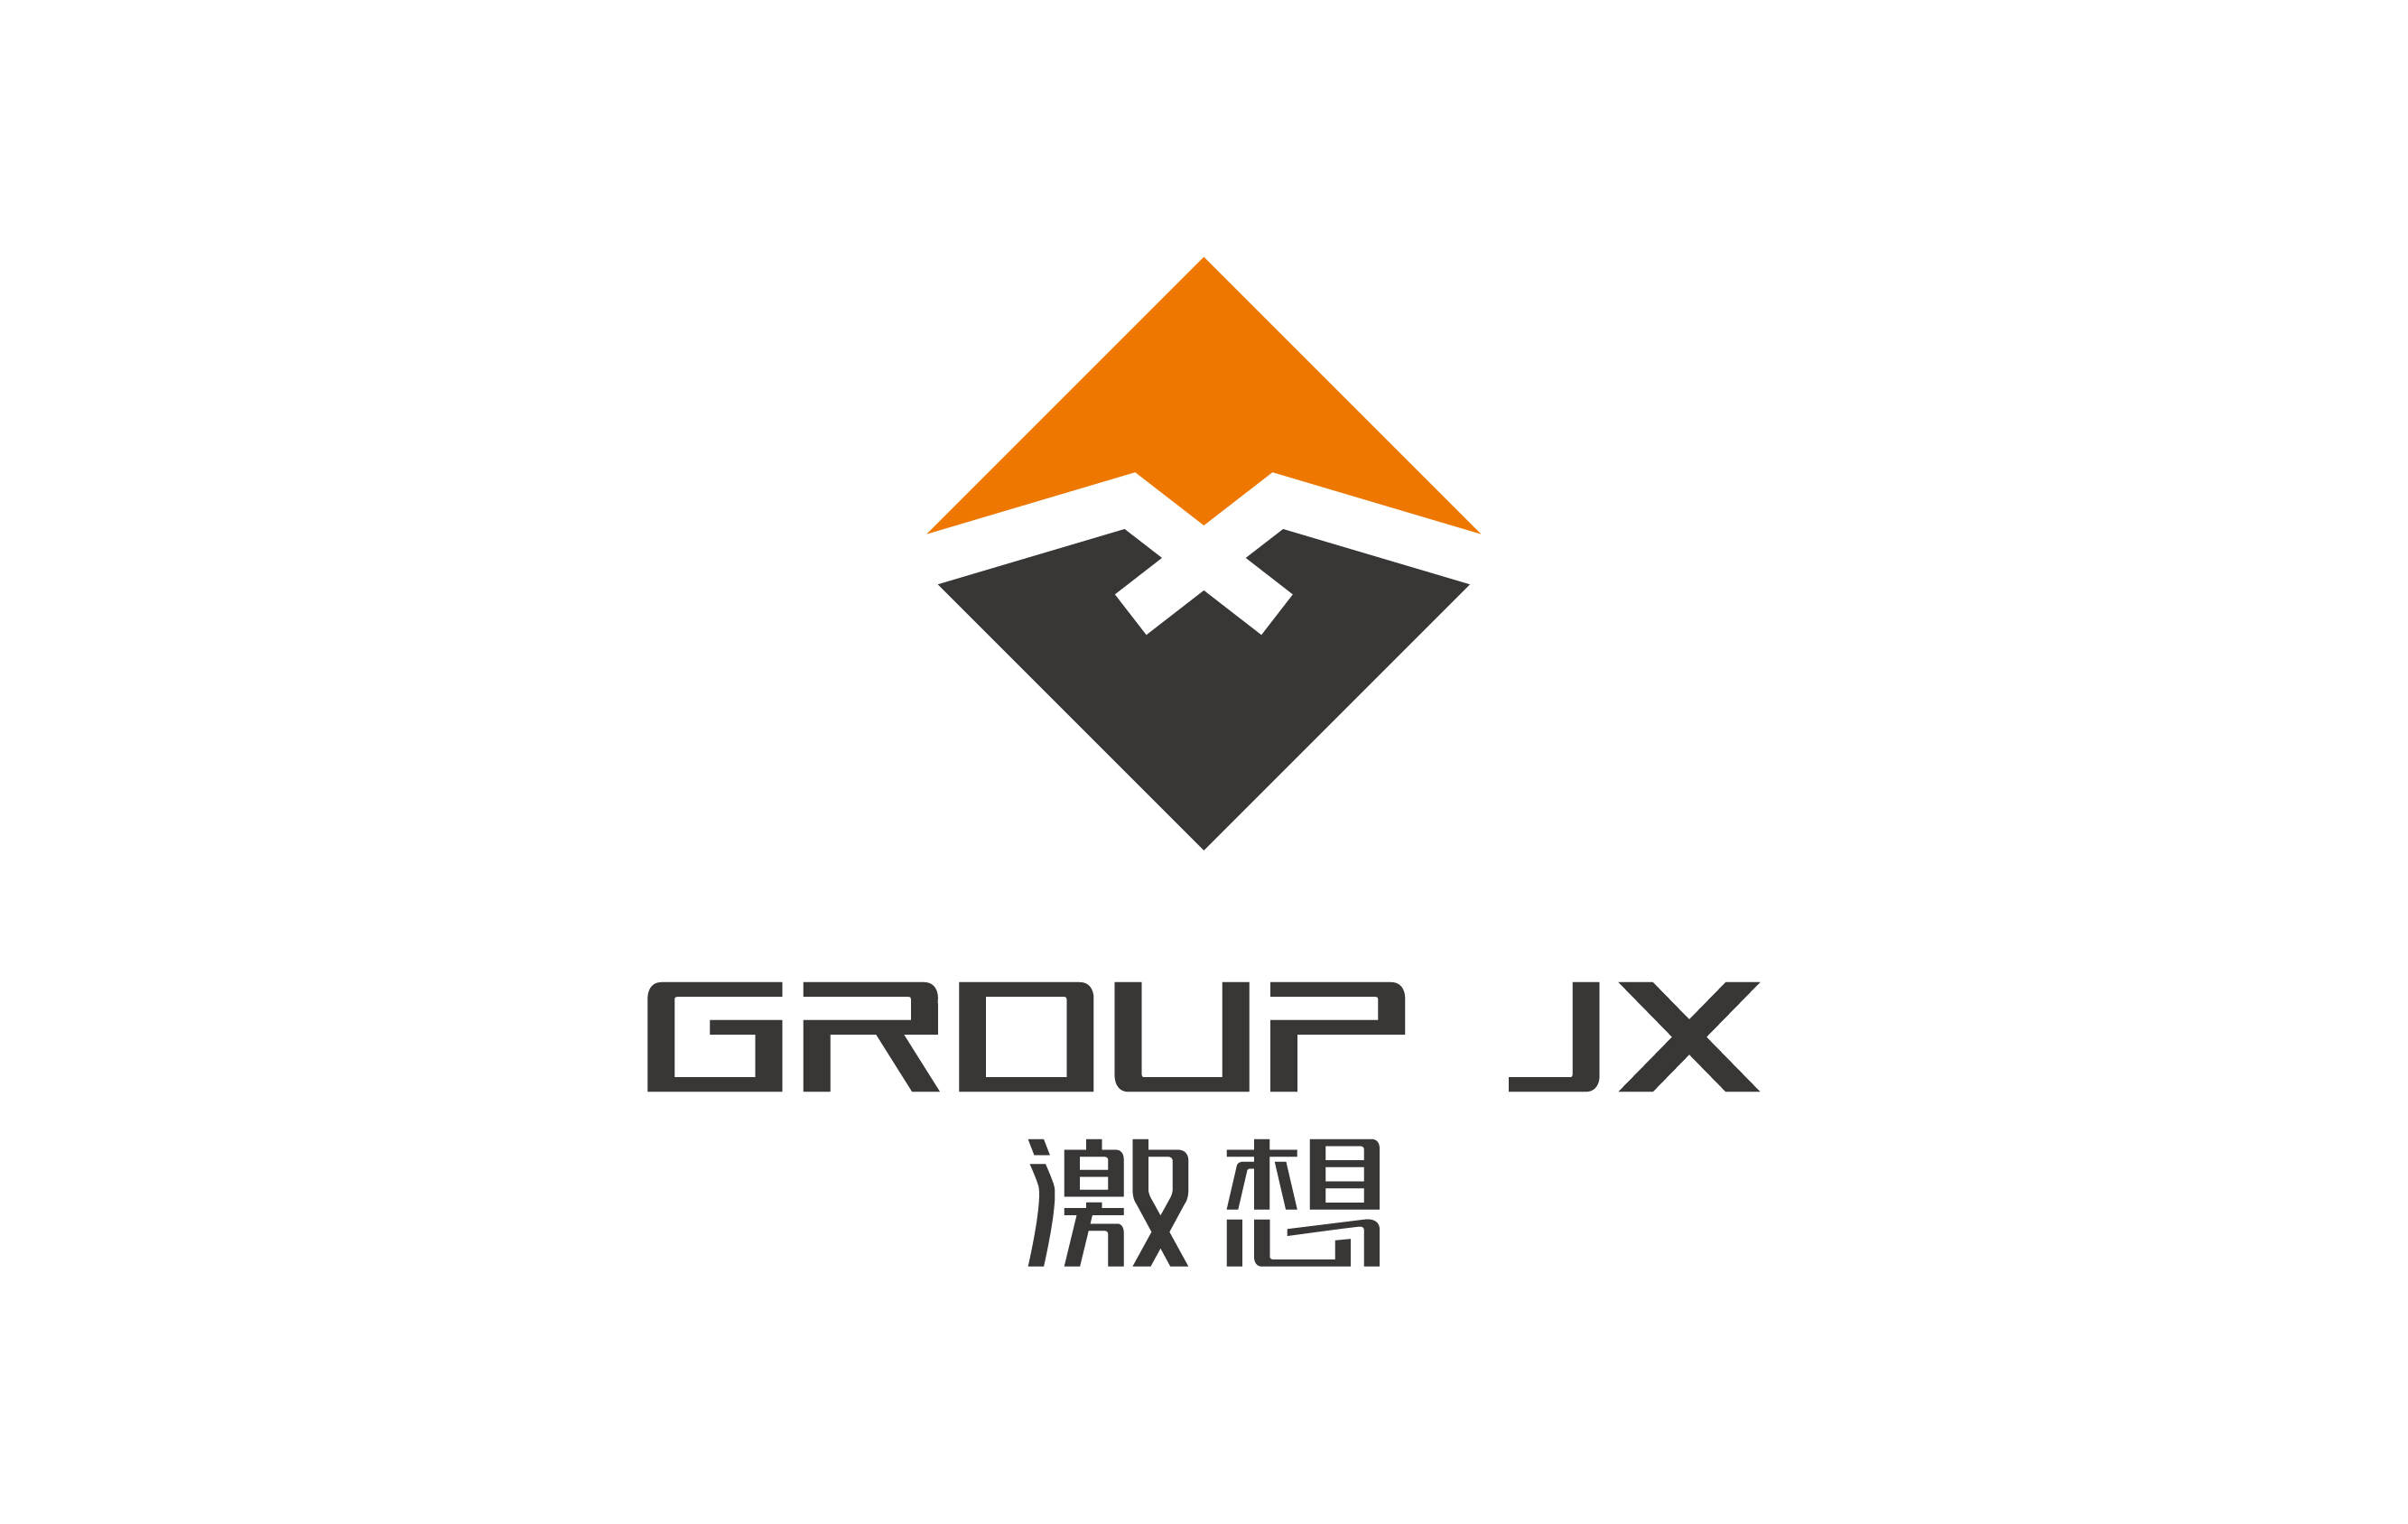 上海激想體育用品logo標志設計